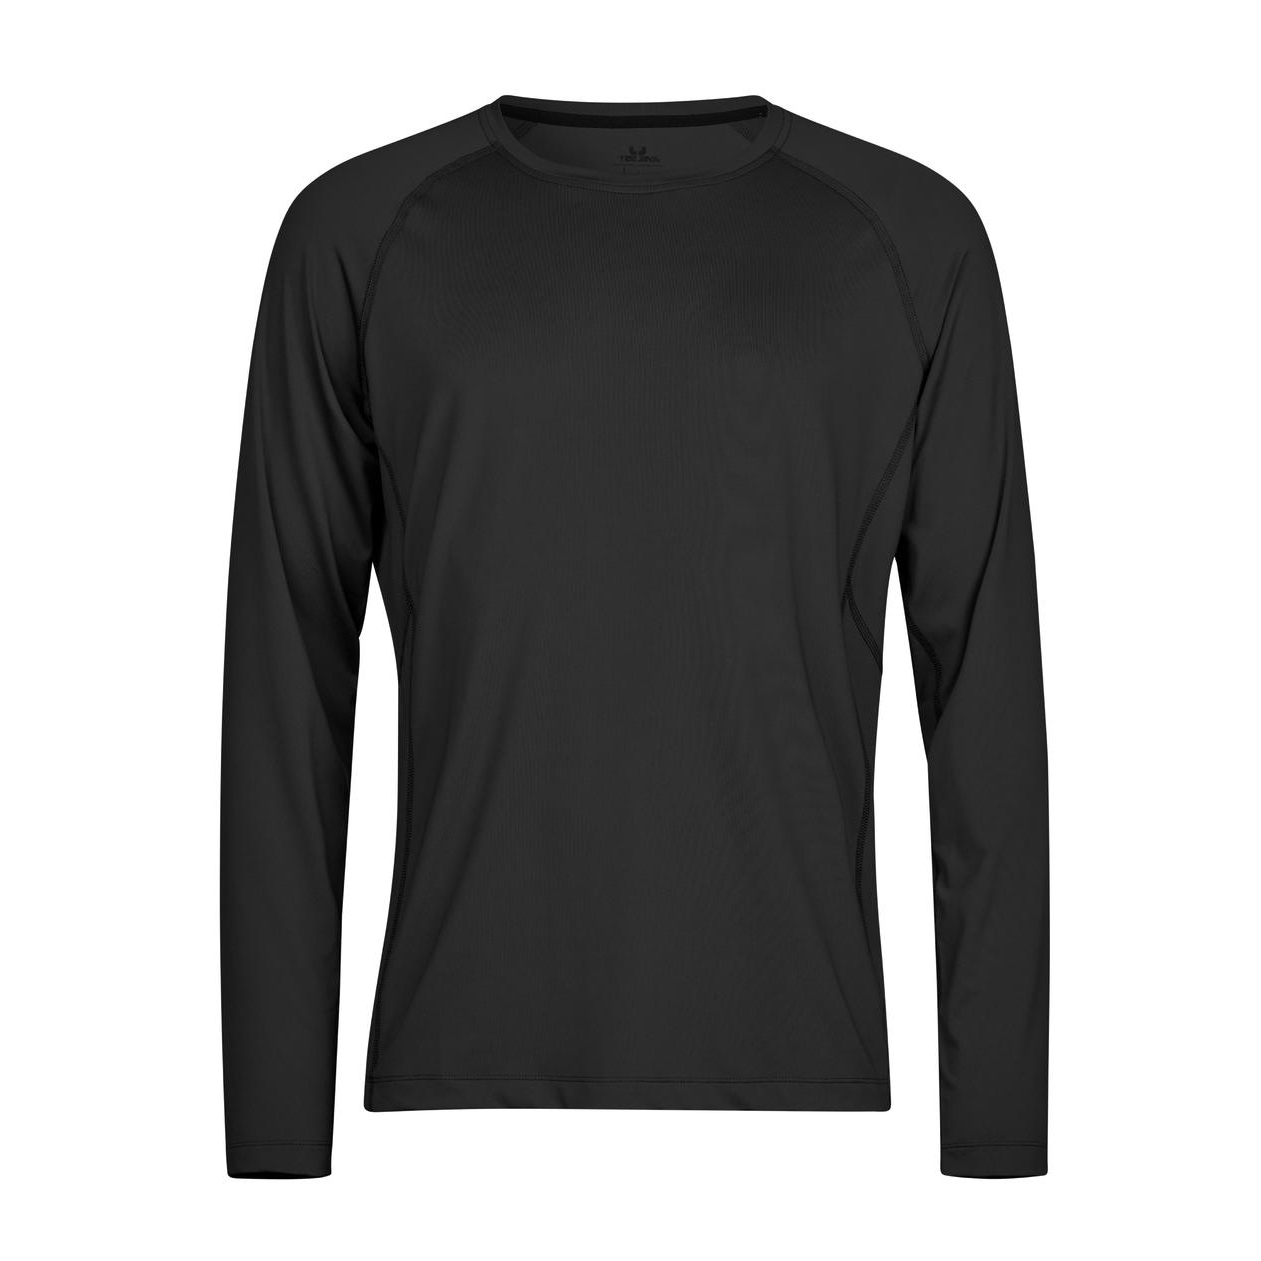 Triko pánské Stedman Tee Jays CoolDry tričko s dlouhými rukávy - černé, L